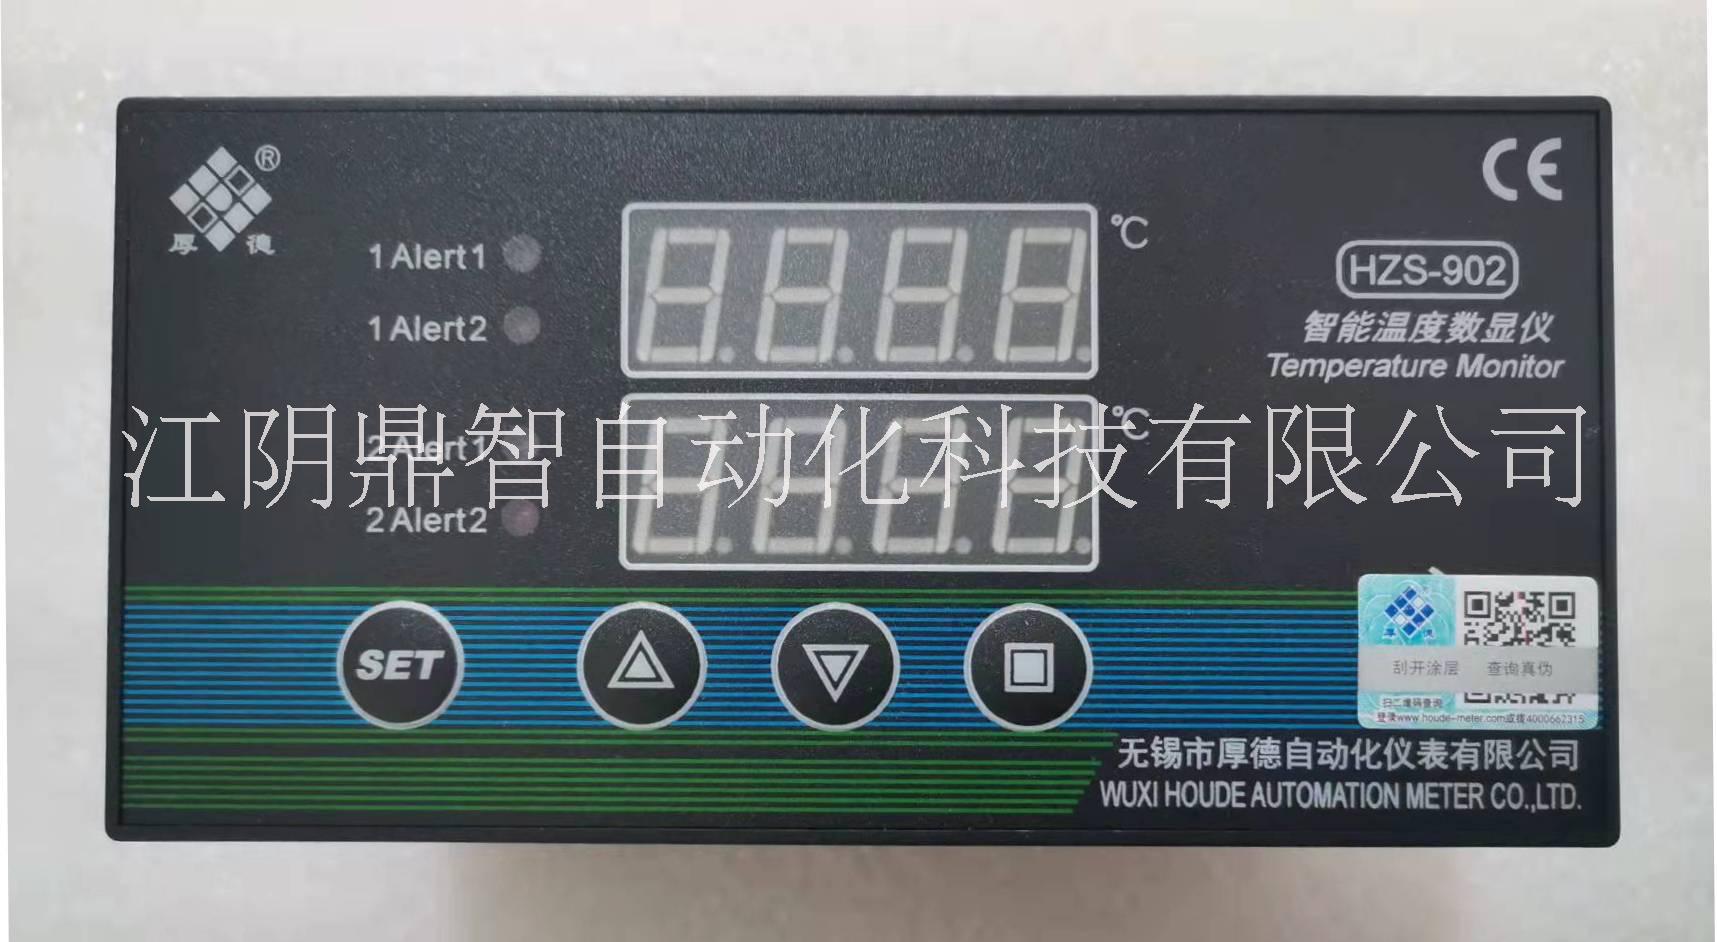 无锡厚德HZS-902型智能温度数显仪表